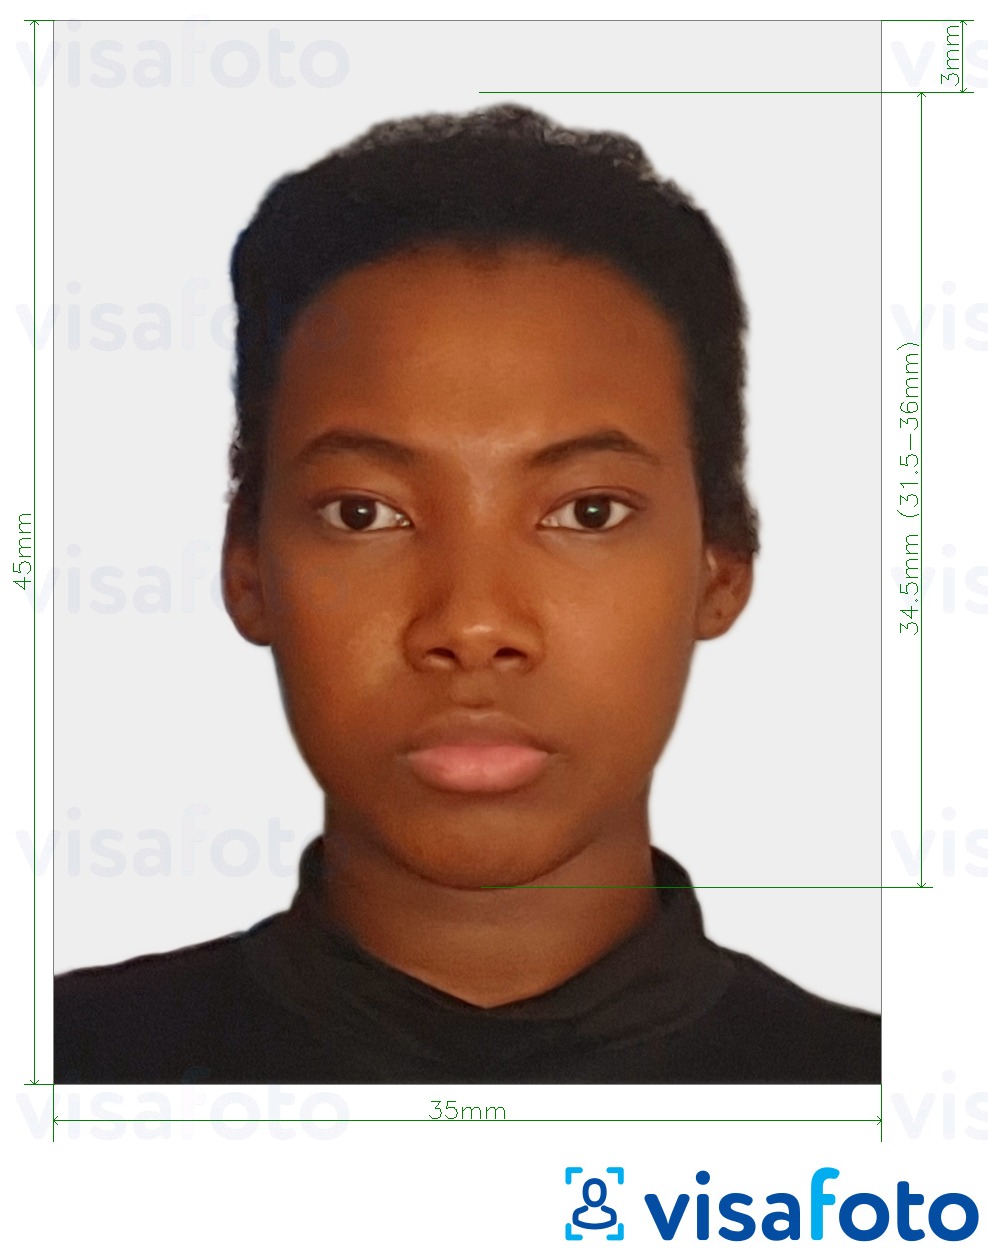 Contoh dari foto untuk Visa Suriname online dengan ukuran spesifikasi yang tepat